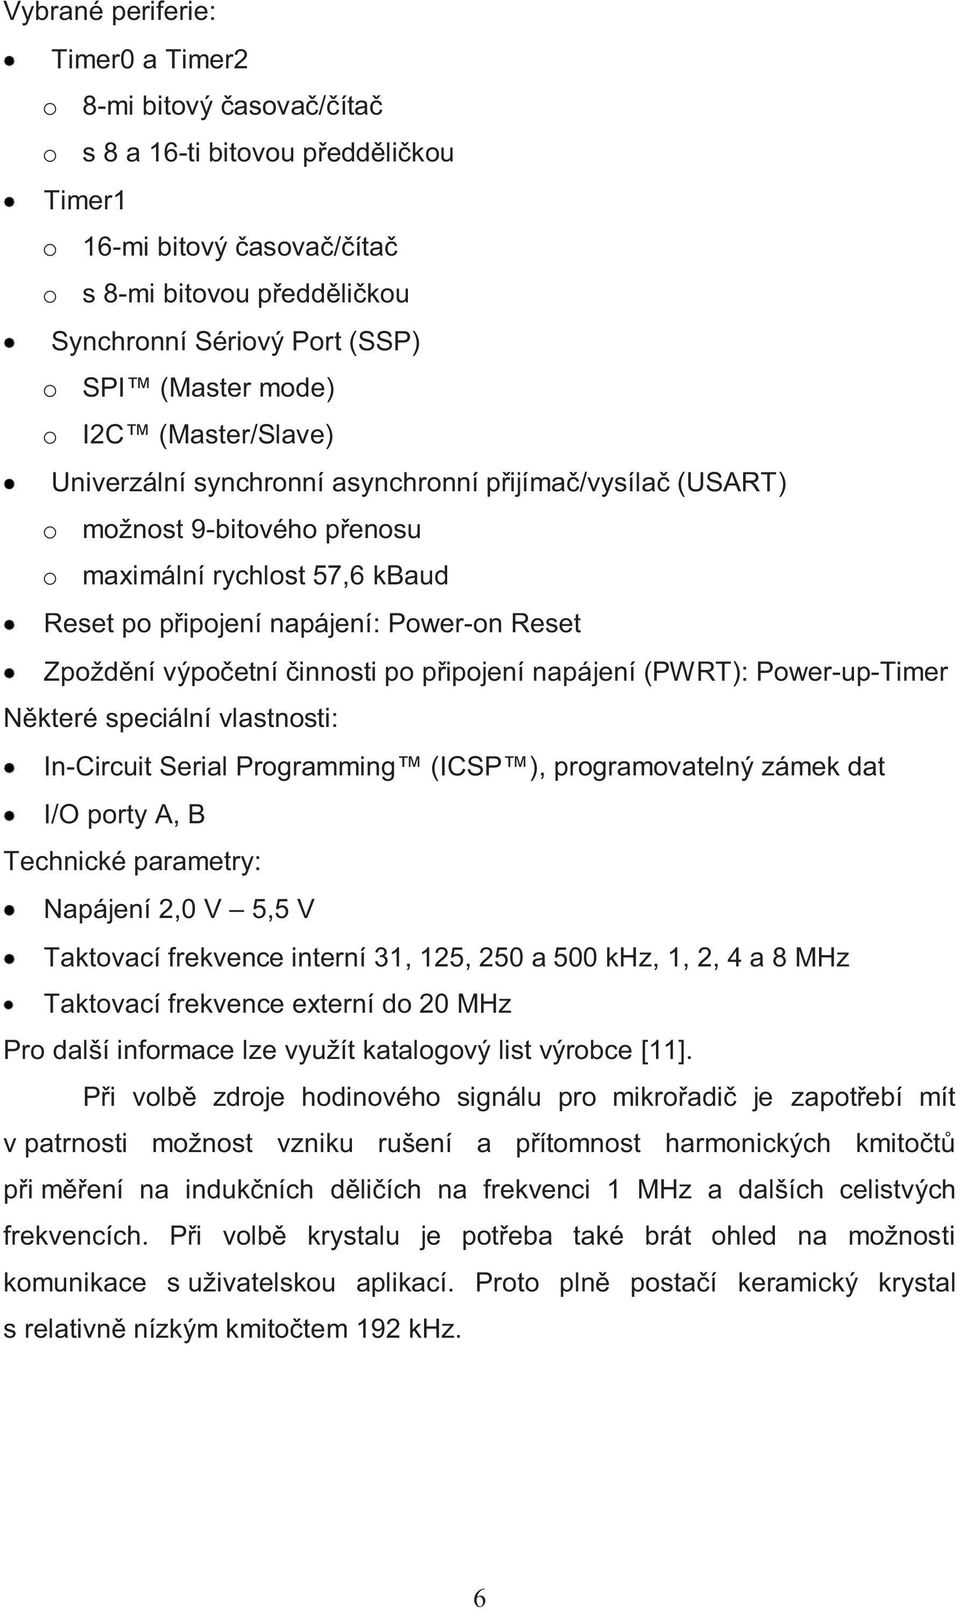 Zpoždění výpočetní činnosti po připojení napájení (PWRT): Power-up-Timer Některé speciální vlastnosti: In-Circuit Serial Programming (ICSP ), programovatelný zámek dat I/O porty A, B Technické